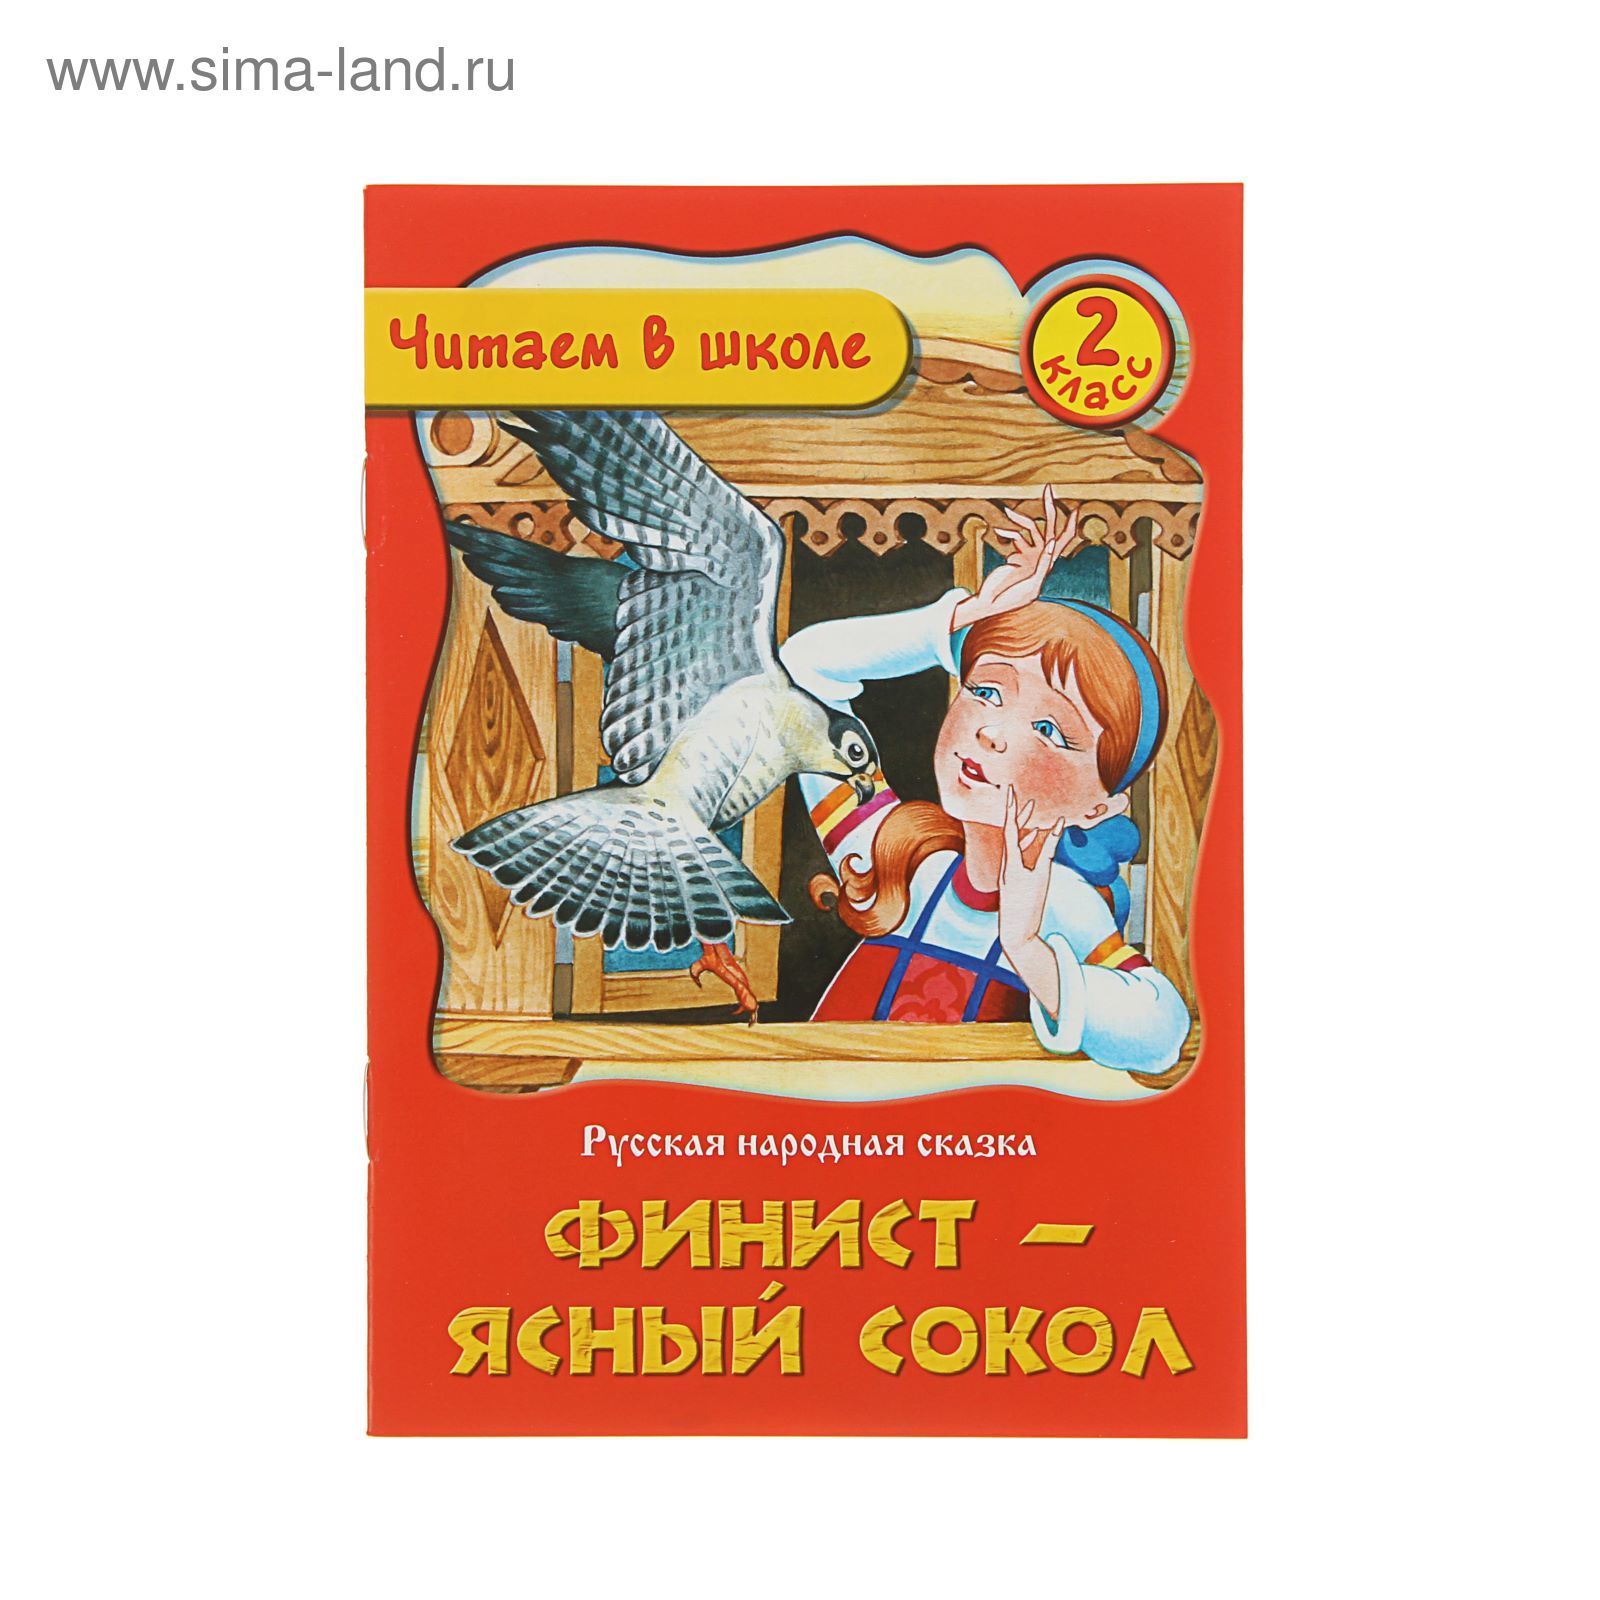 Русские народные сказки книга Финист